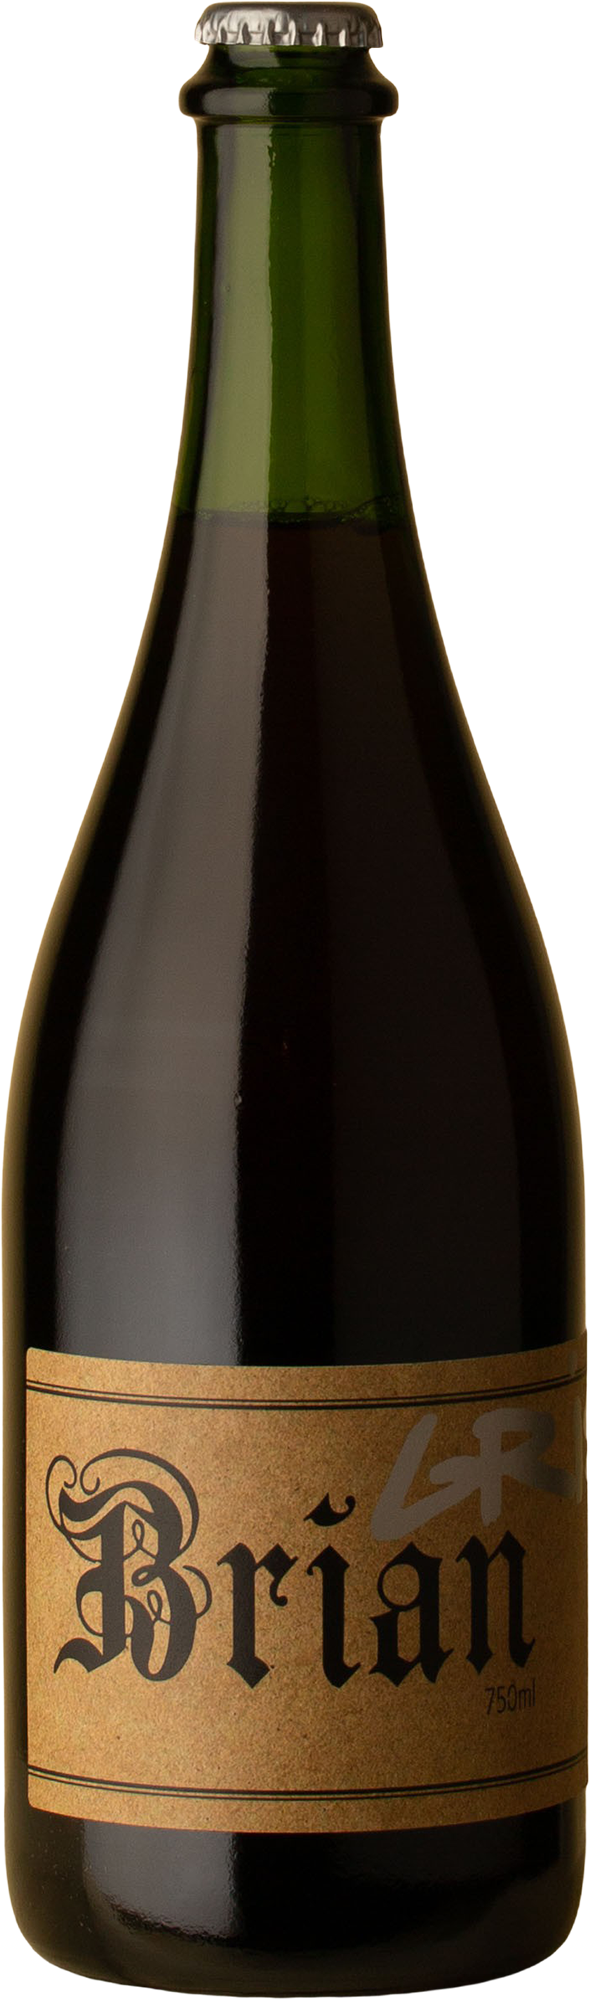 Brian - Pinot Gris 2018 White Wine